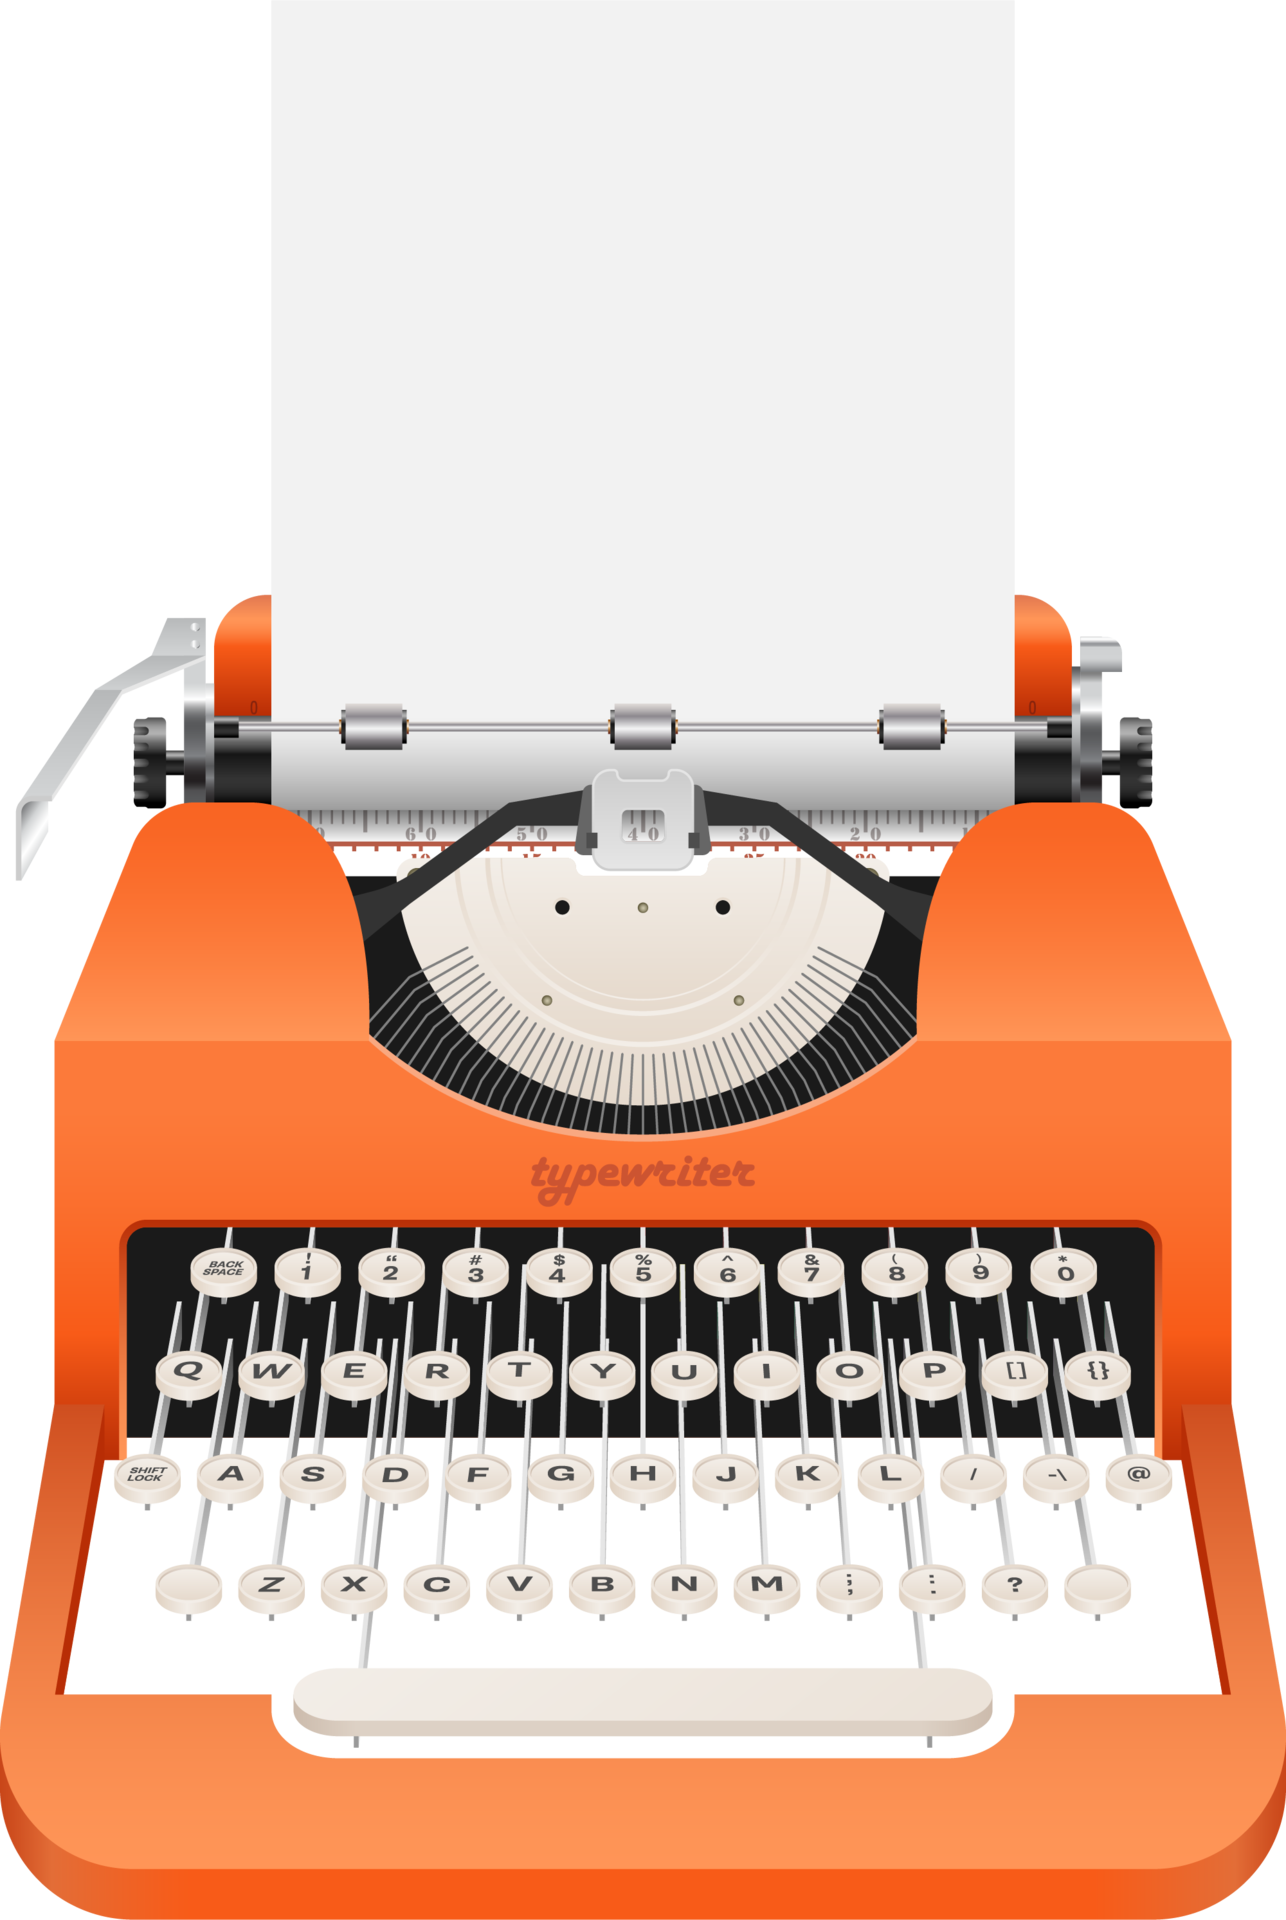 Descarga Imagen llamativa de una máquina de escribir vintage con diseño  colorido PNG En Línea - Creative Fabrica